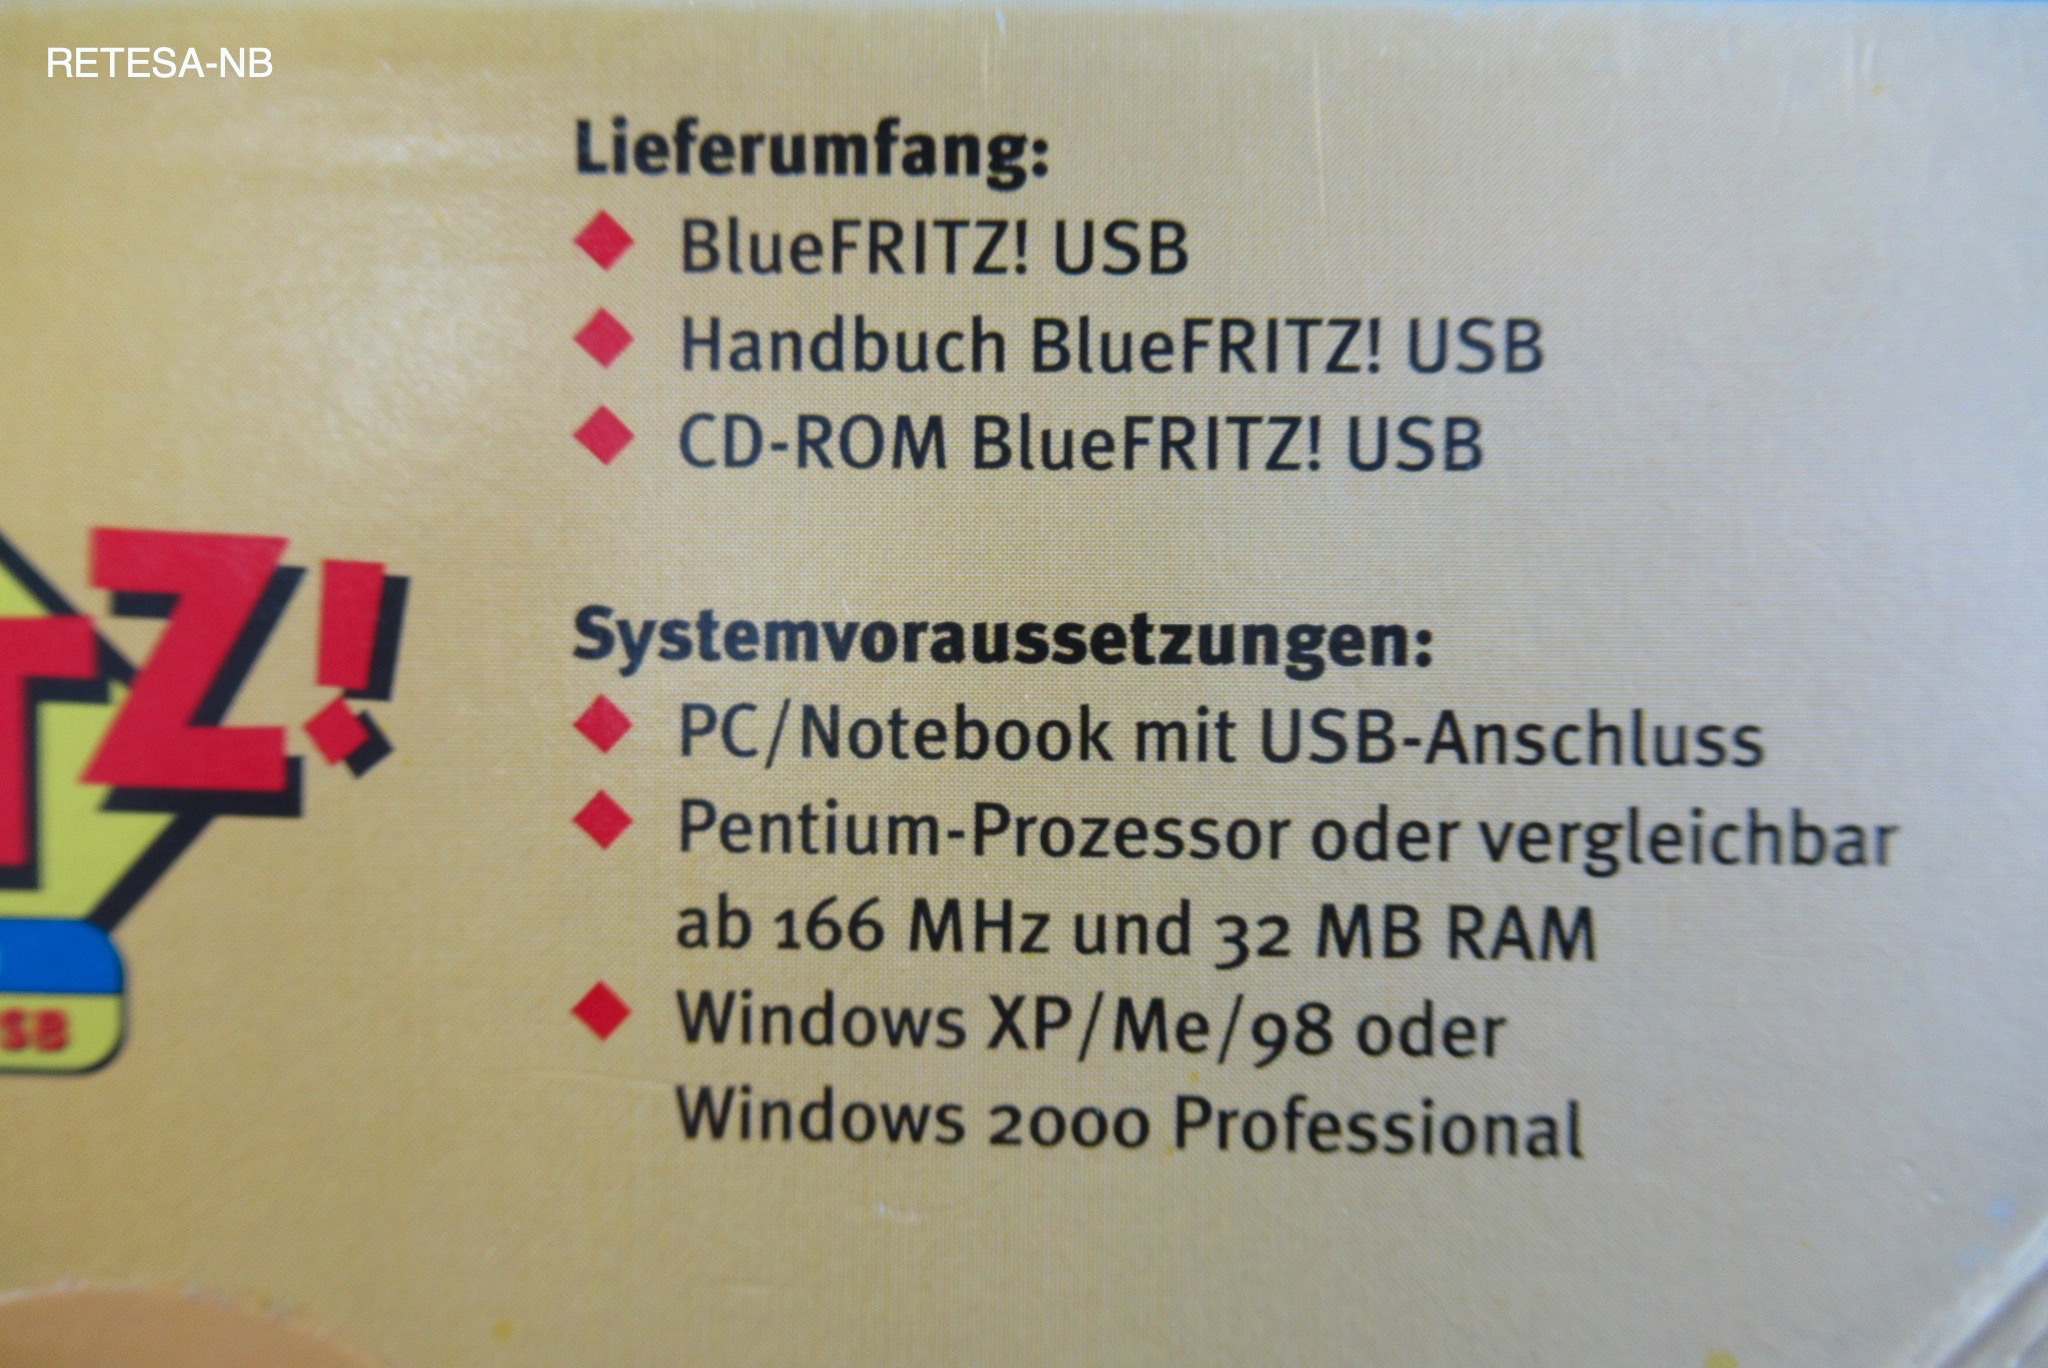 AVM BlueFRITZ! USB Bluetooth-Controller AVM 20001641